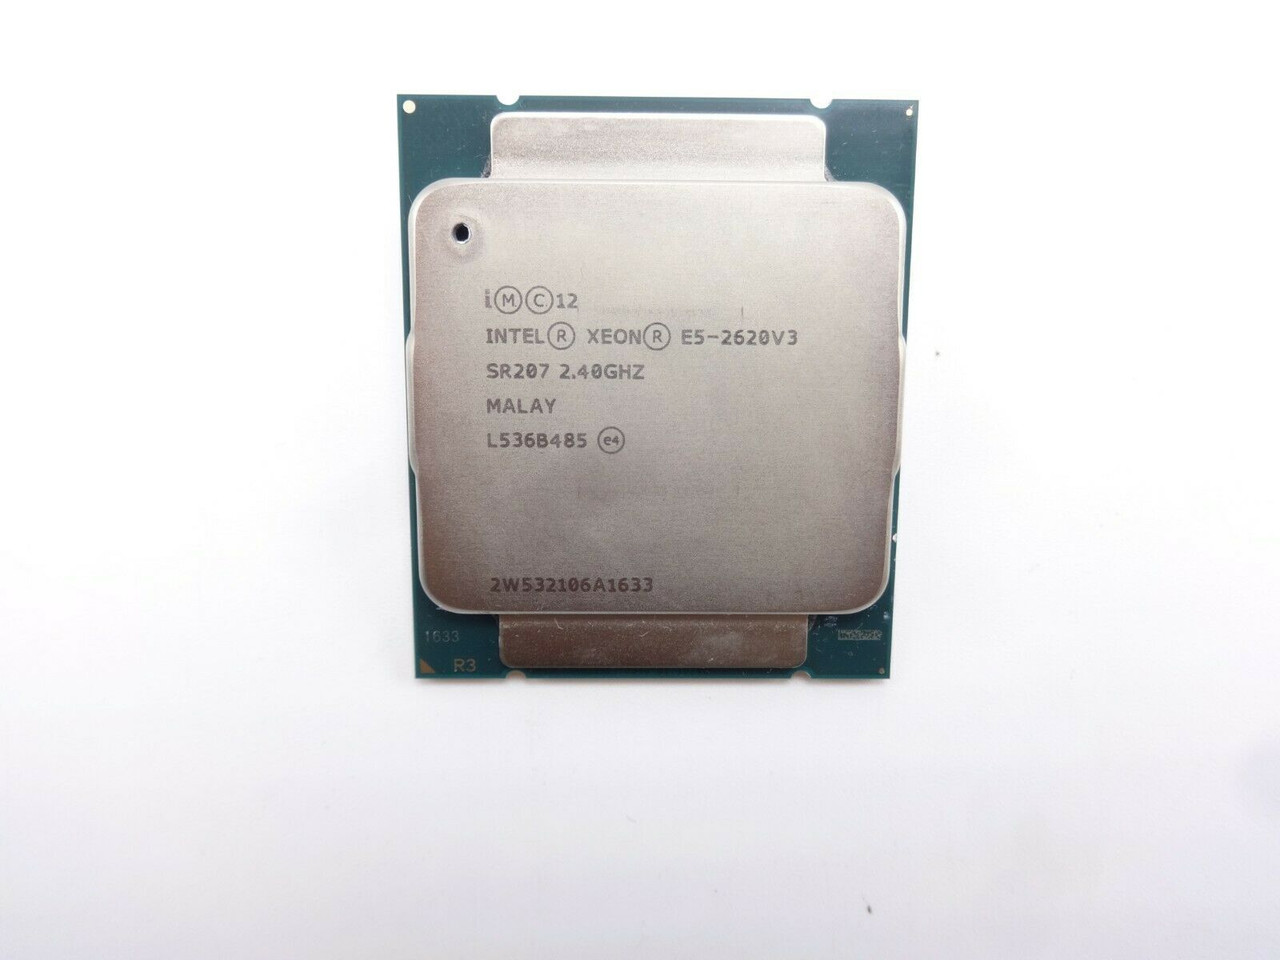 Intel Xeon SR207 6Core E5-2620 V3 2.4Ghz 15MB Processor Chip